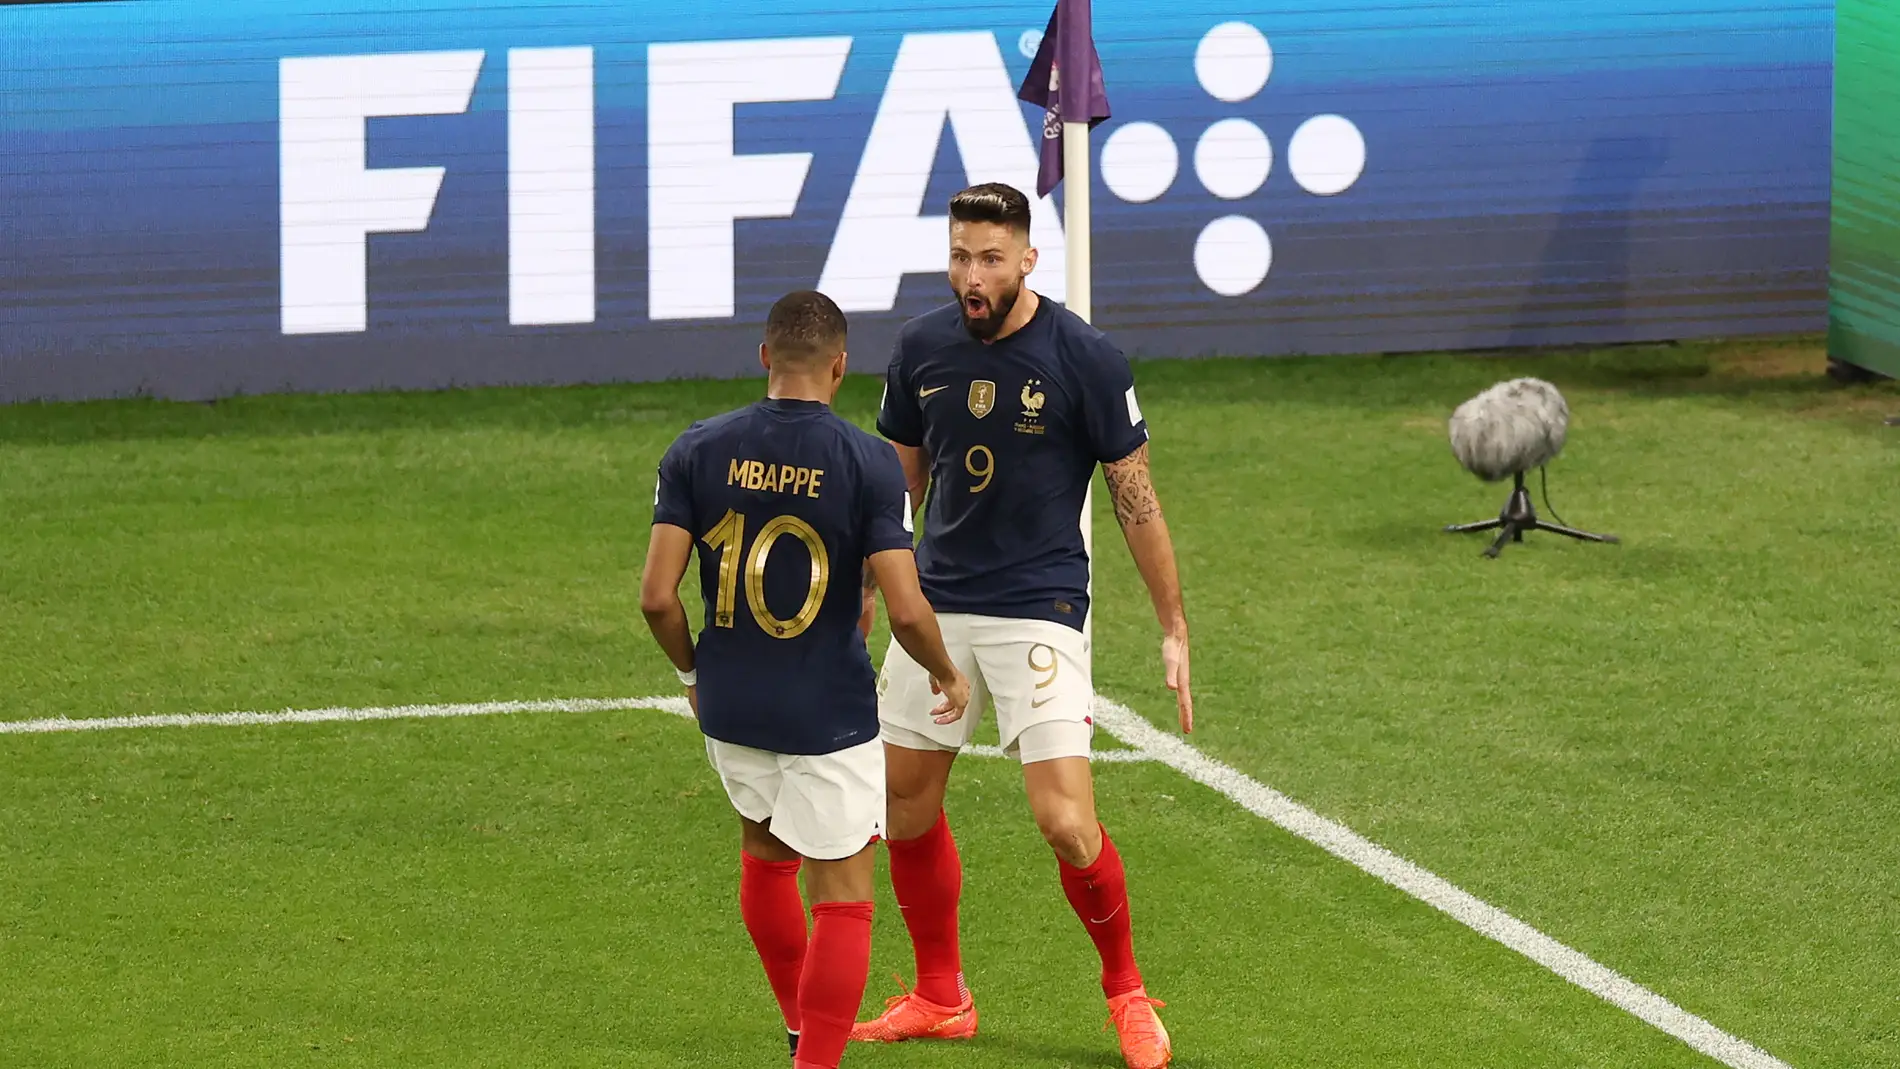 Francia se impone a Polonia y avanza a cuartos del Mundial de Qatar 2022